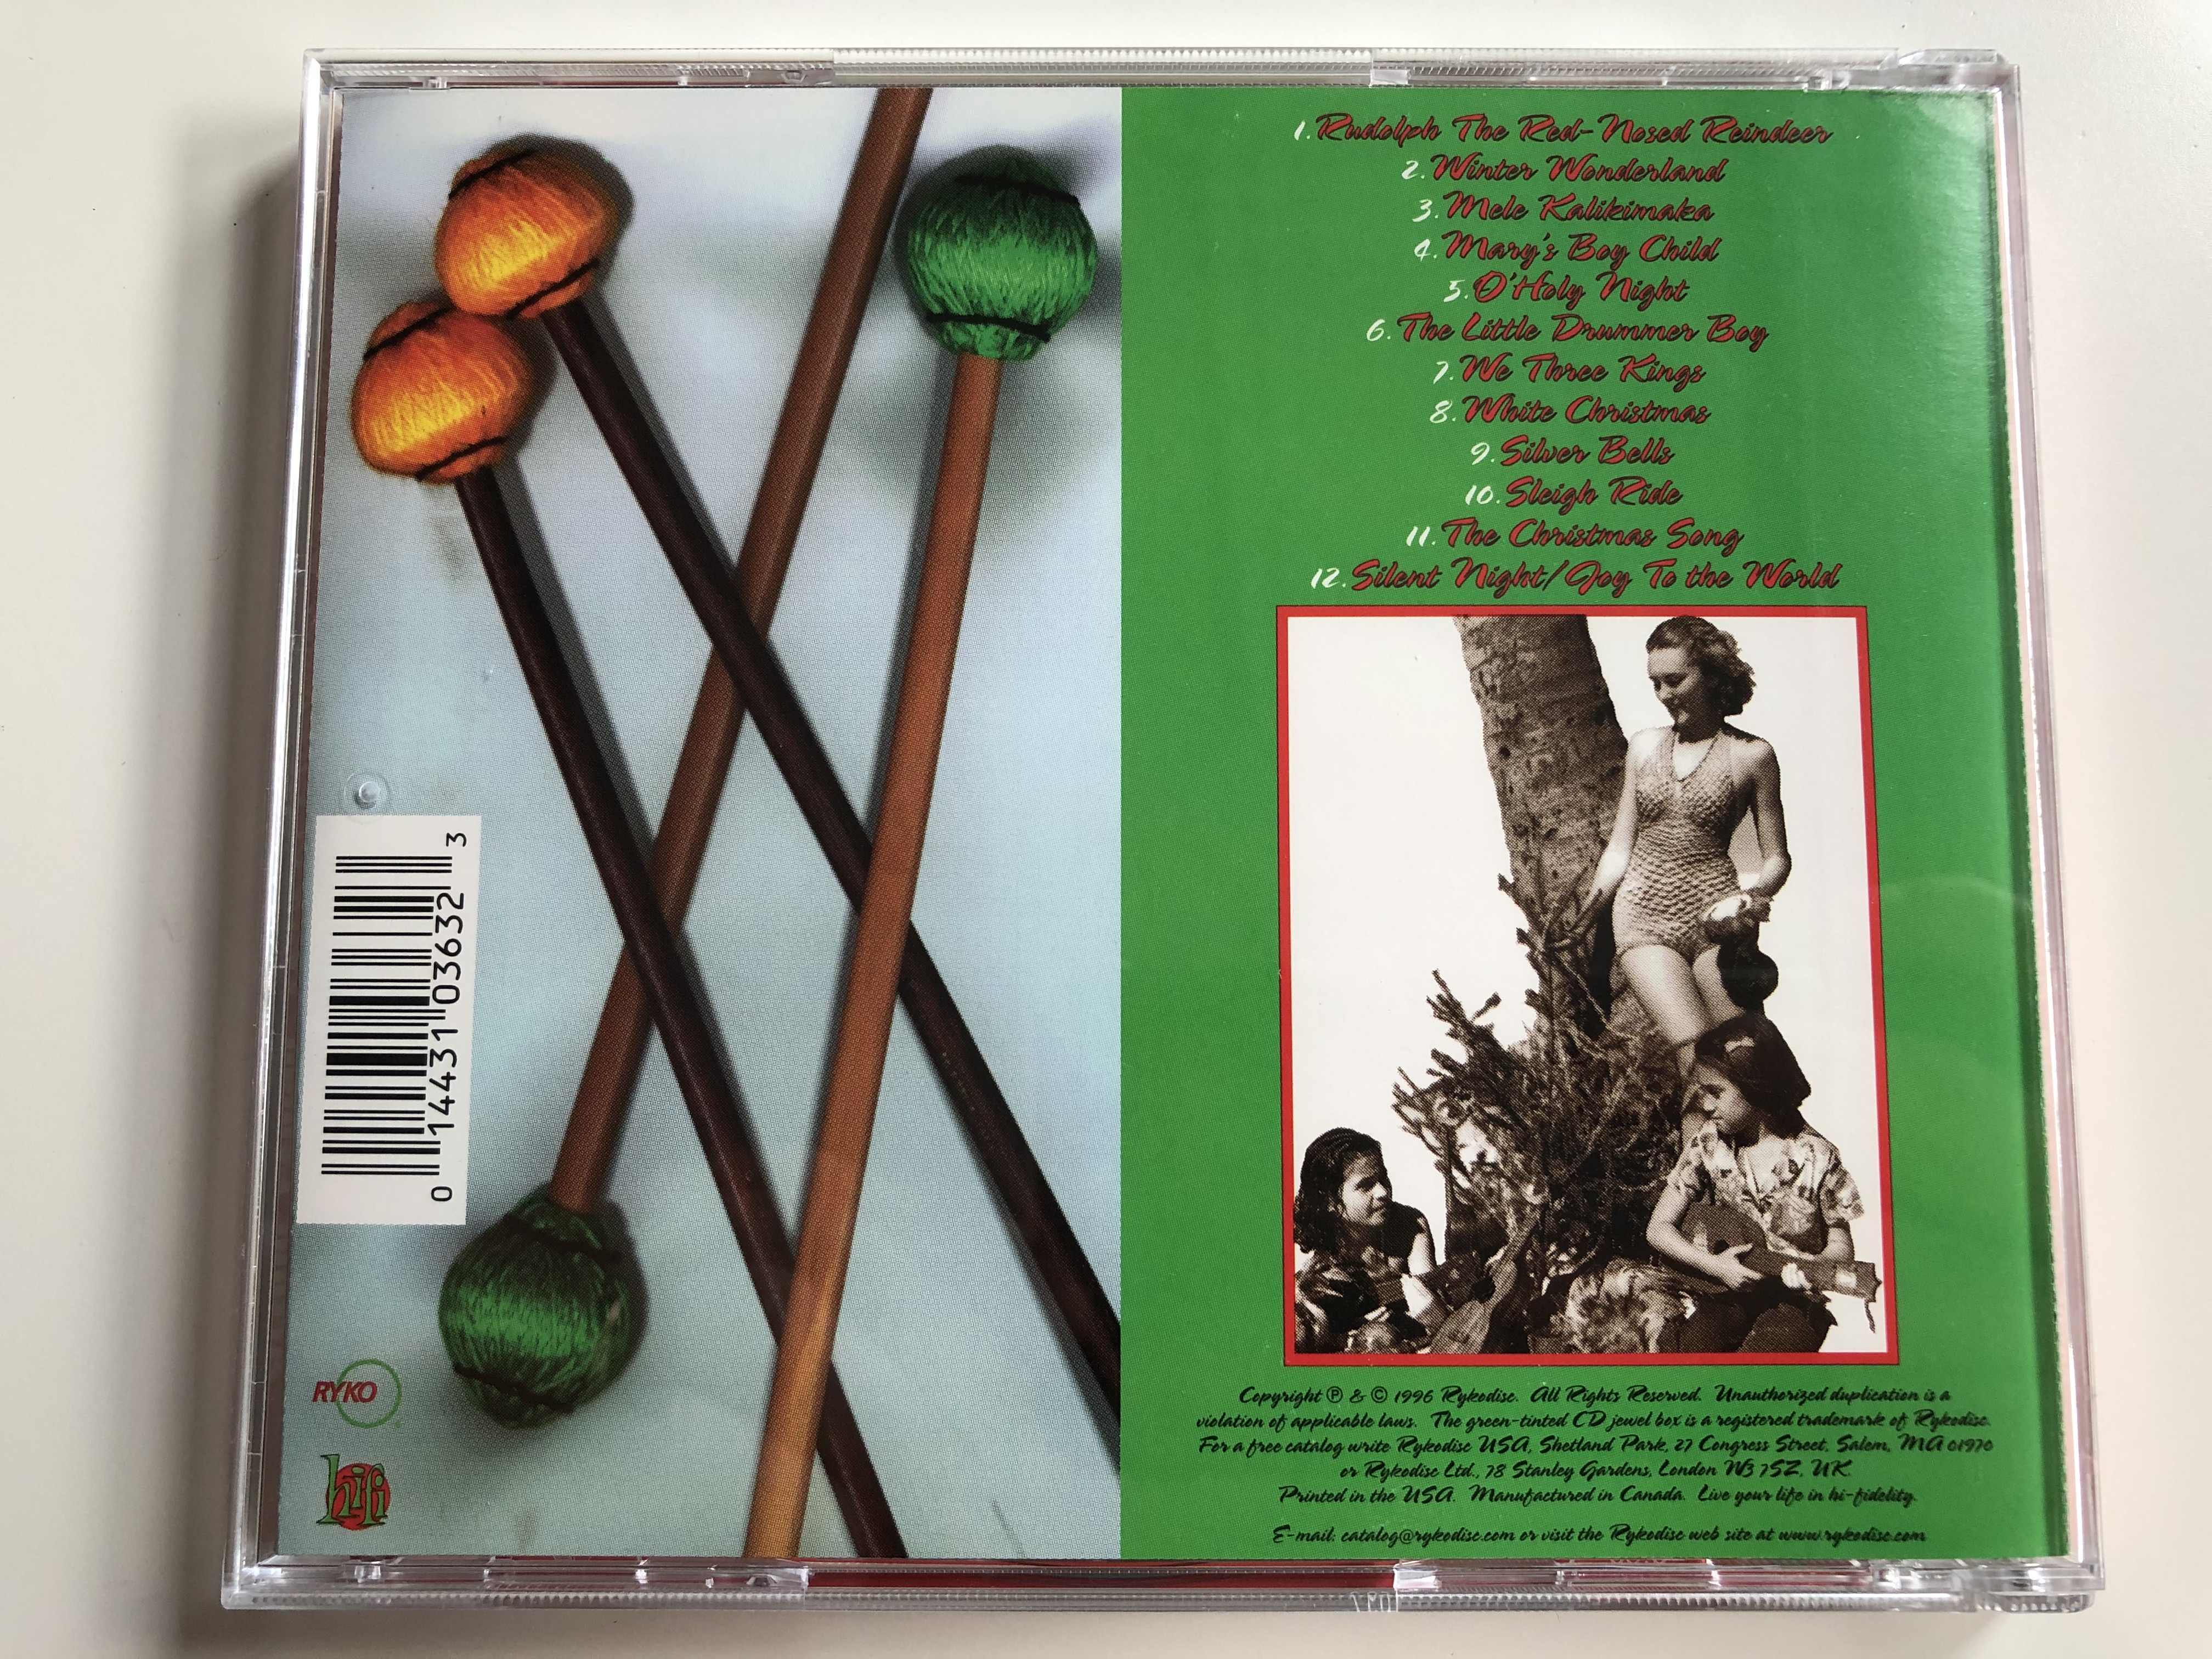 with-a-christmas-vibe-arthur-lyman-rykodisc-audio-cd-1996-rcd-50363-7-.jpg